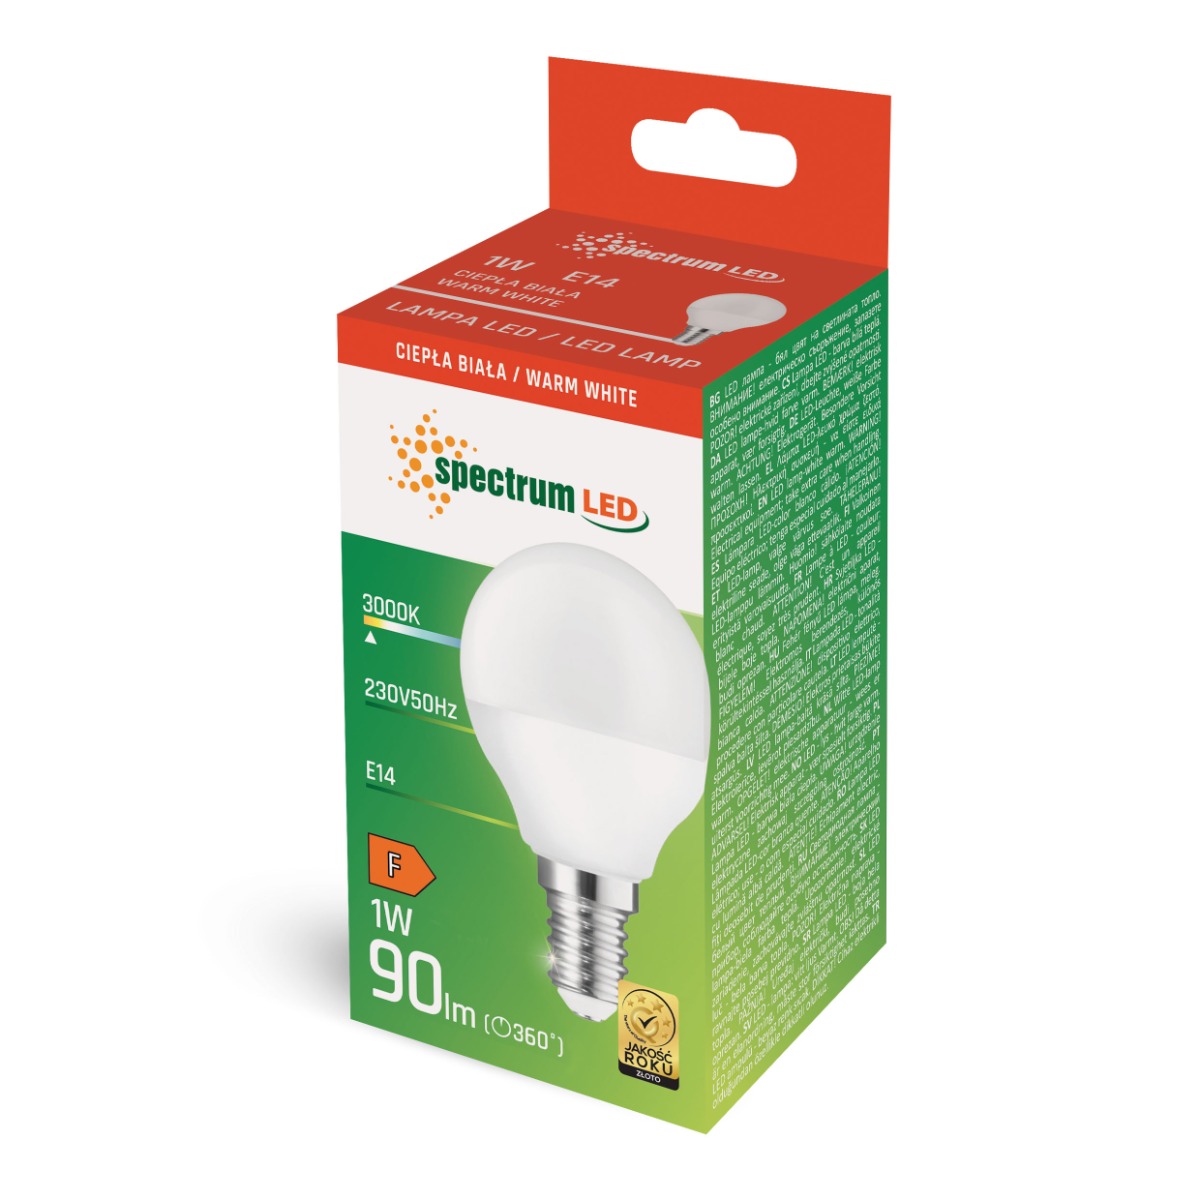 E14 LED Light Bulbs Teardrop Ball 1W G45 